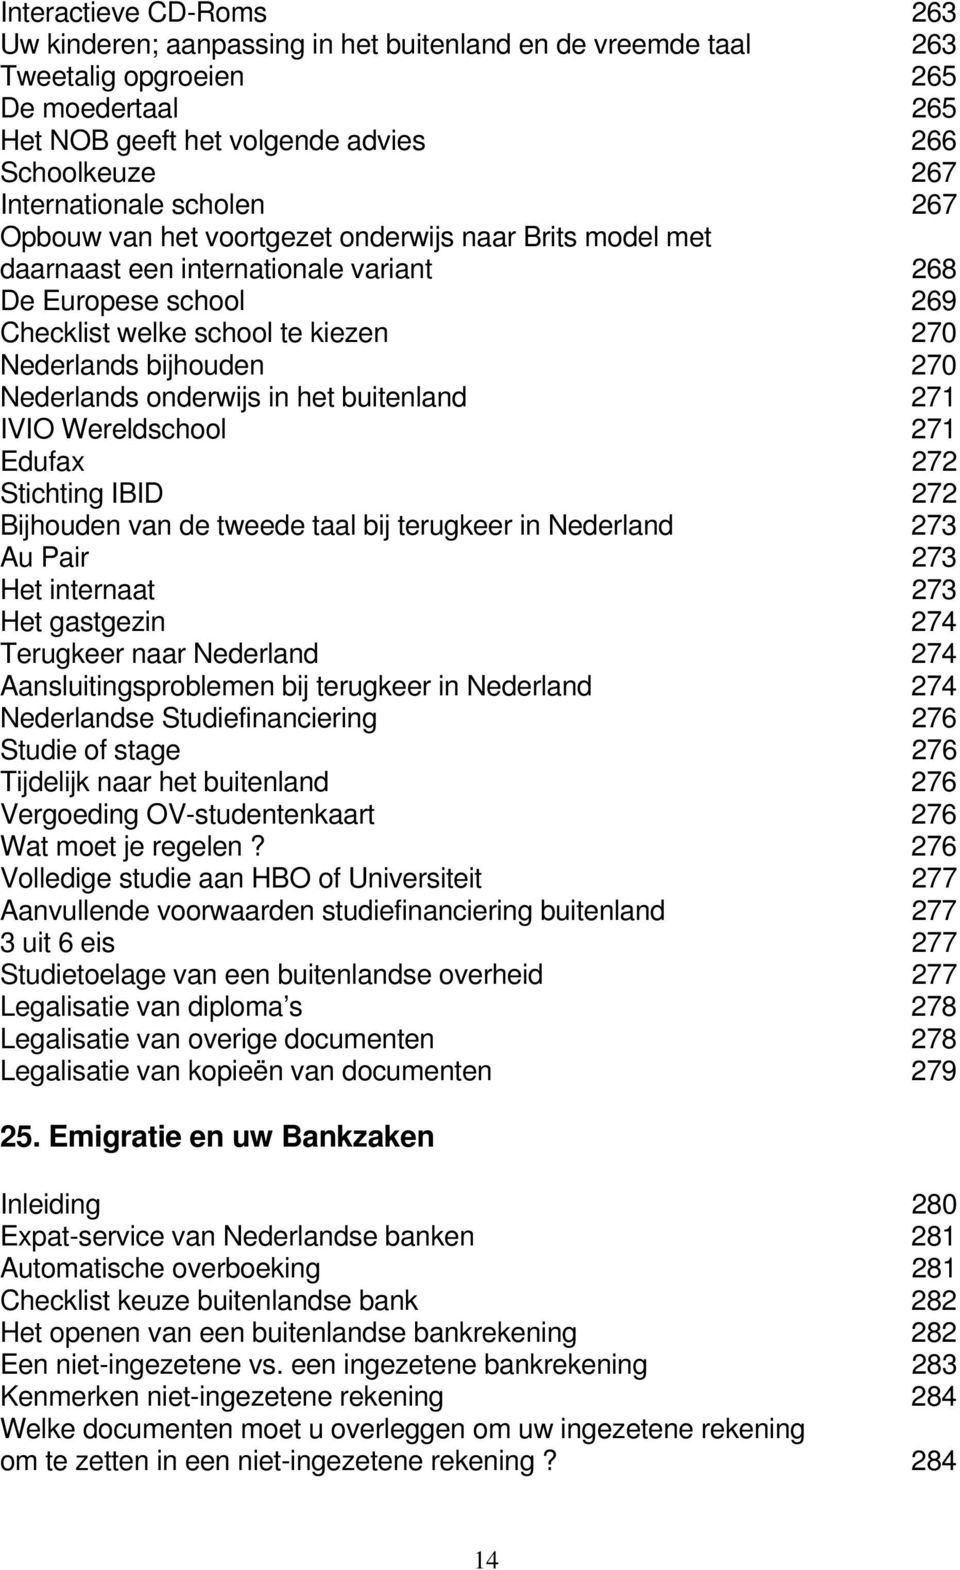 bijhouden 270 Nederlands onderwijs in het buitenland 271 IVIO Wereldschool 271 Edufax 272 Stichting IBID 272 Bijhouden van de tweede taal bij terugkeer in Nederland 273 Au Pair 273 Het internaat 273